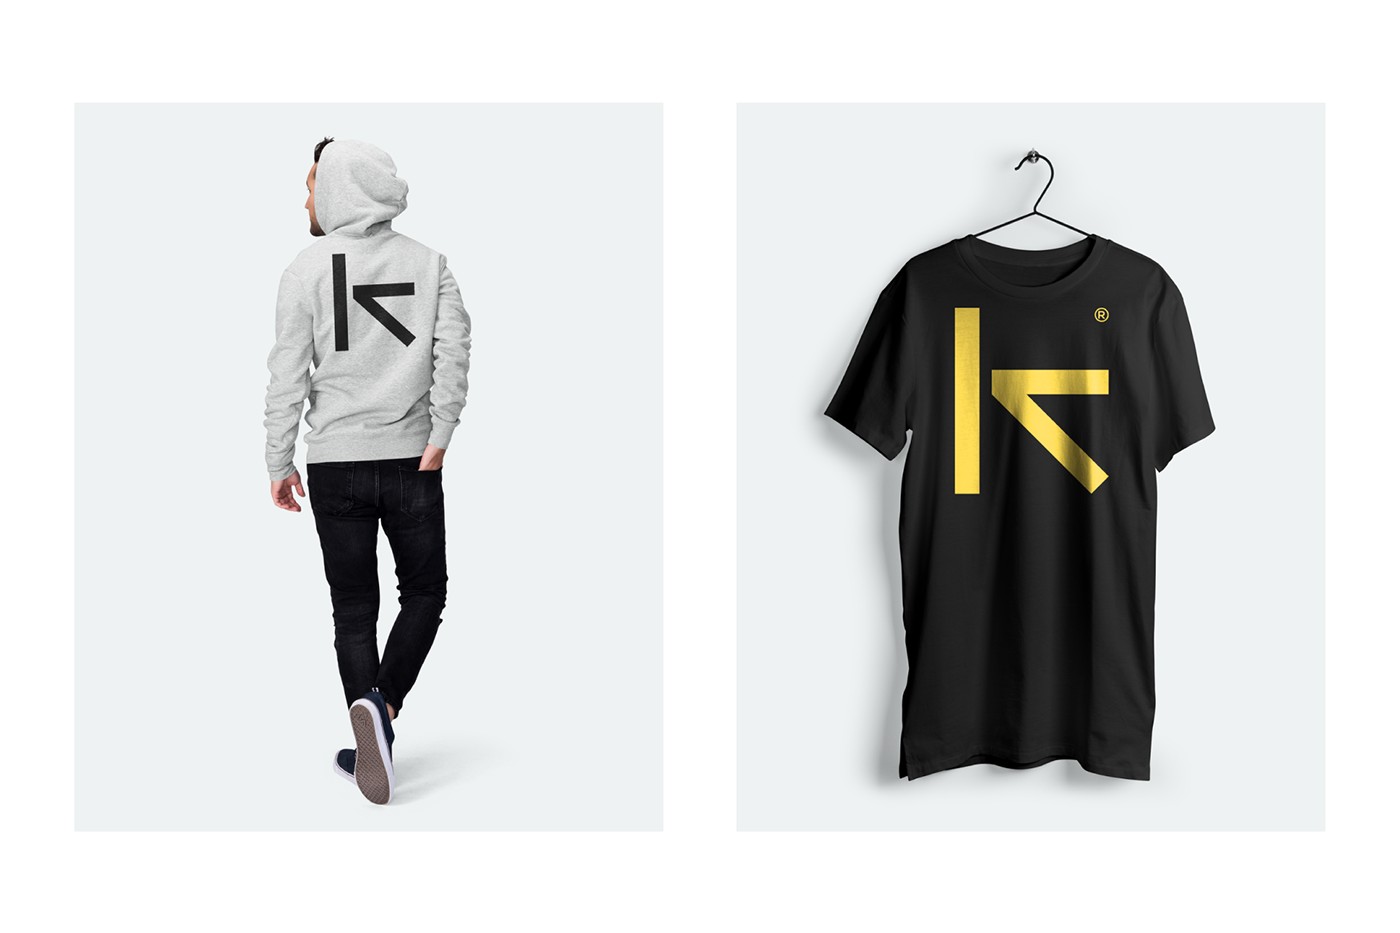 街头服装品牌Kote视觉形象设计